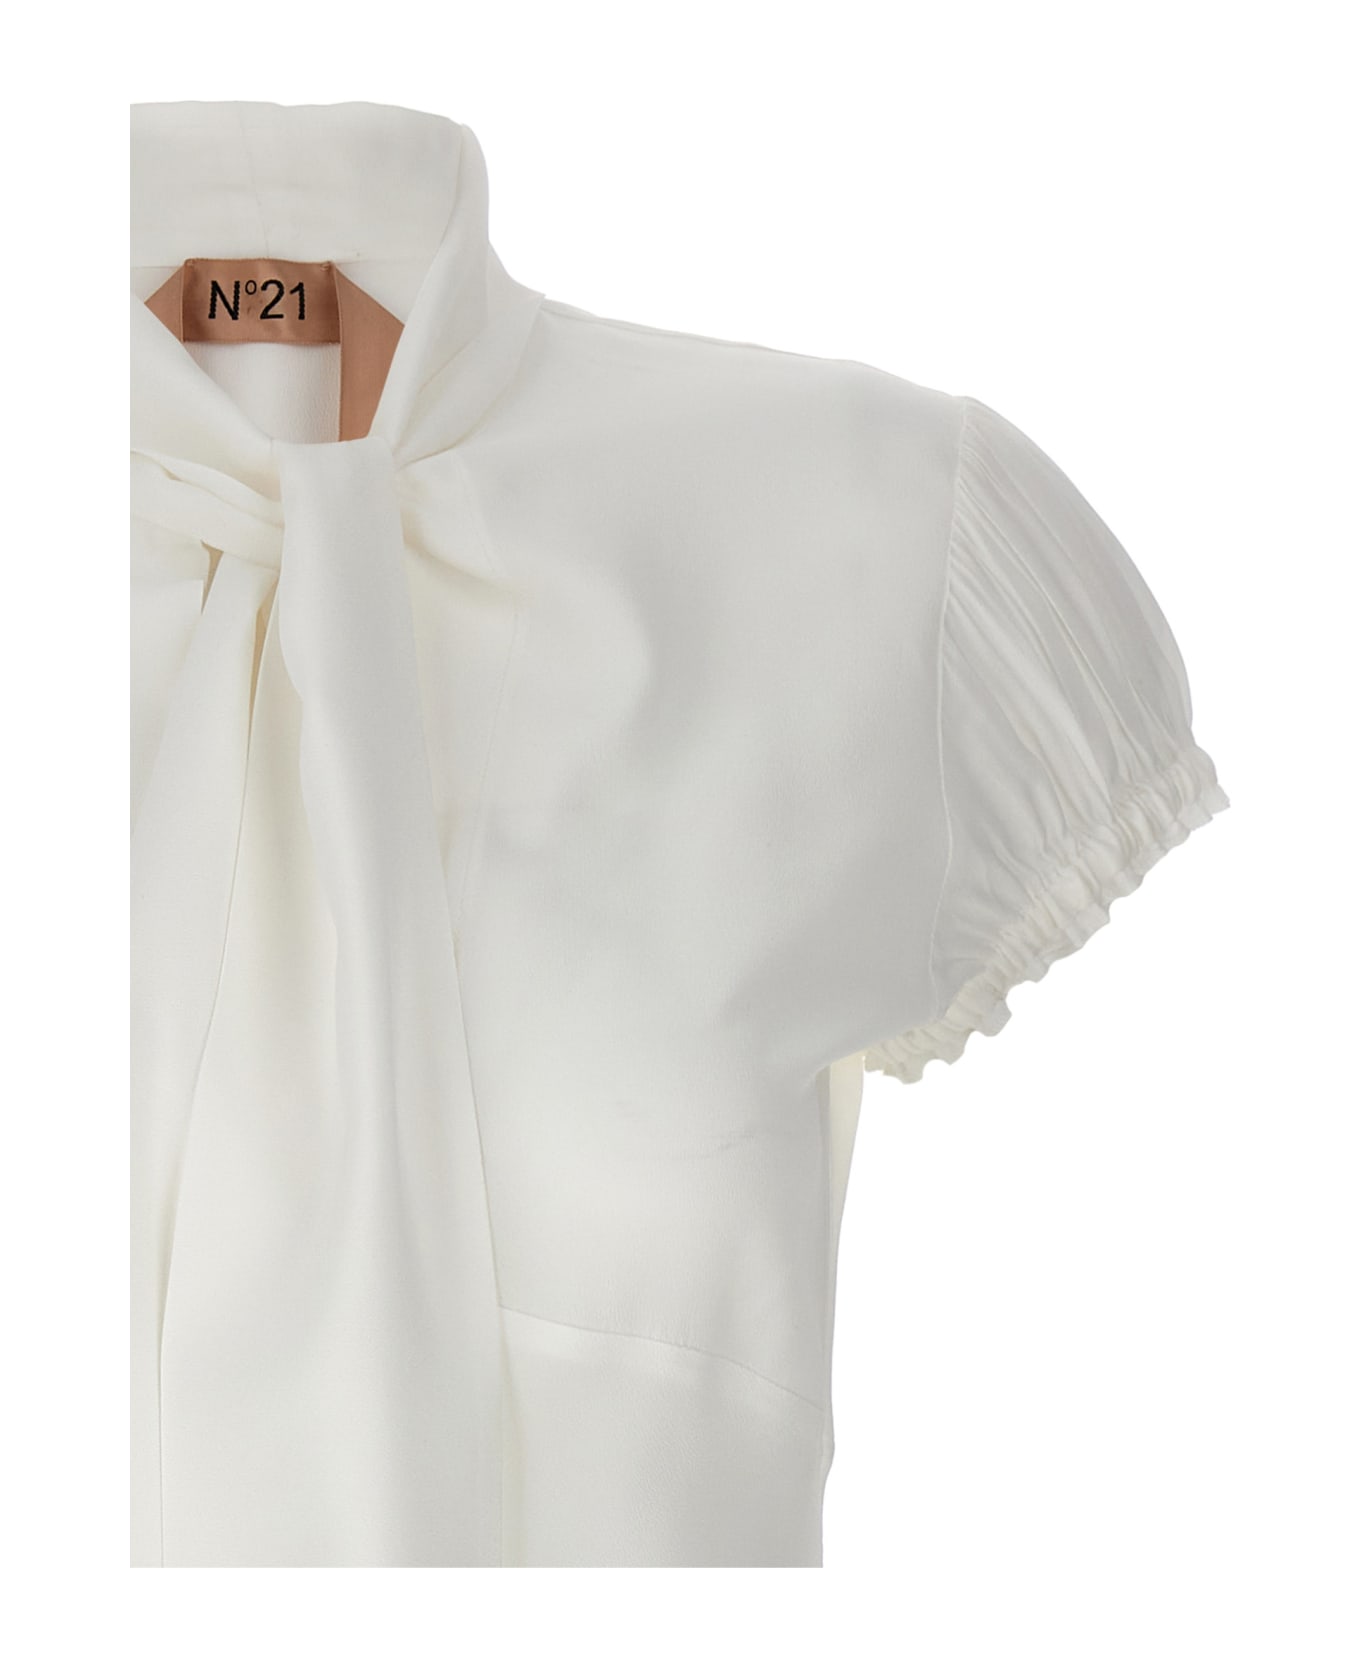 N.21 Lavaliere Silk Blouse - White